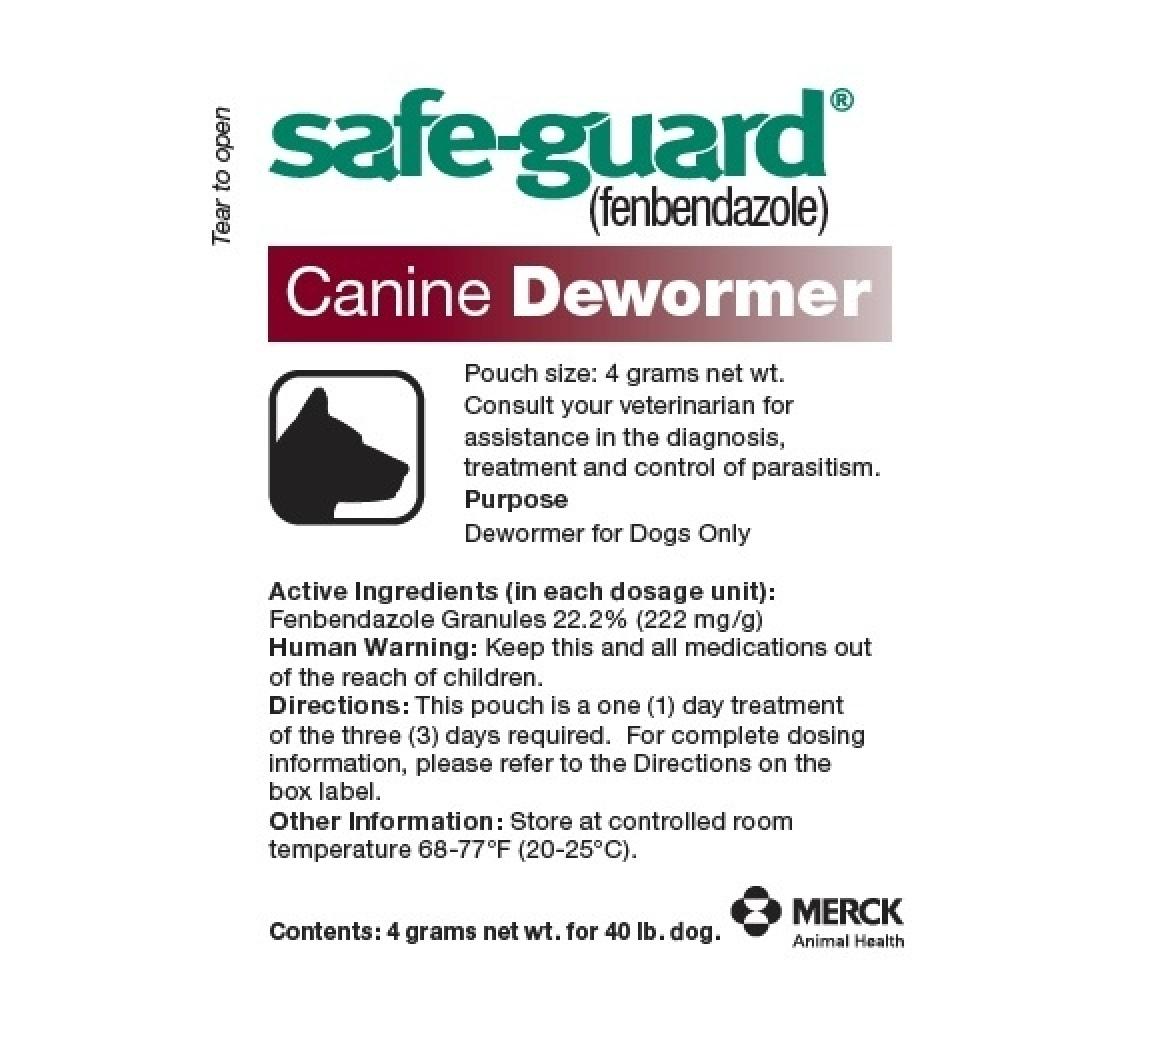 Merck Safe-Guard Canine Dewormer